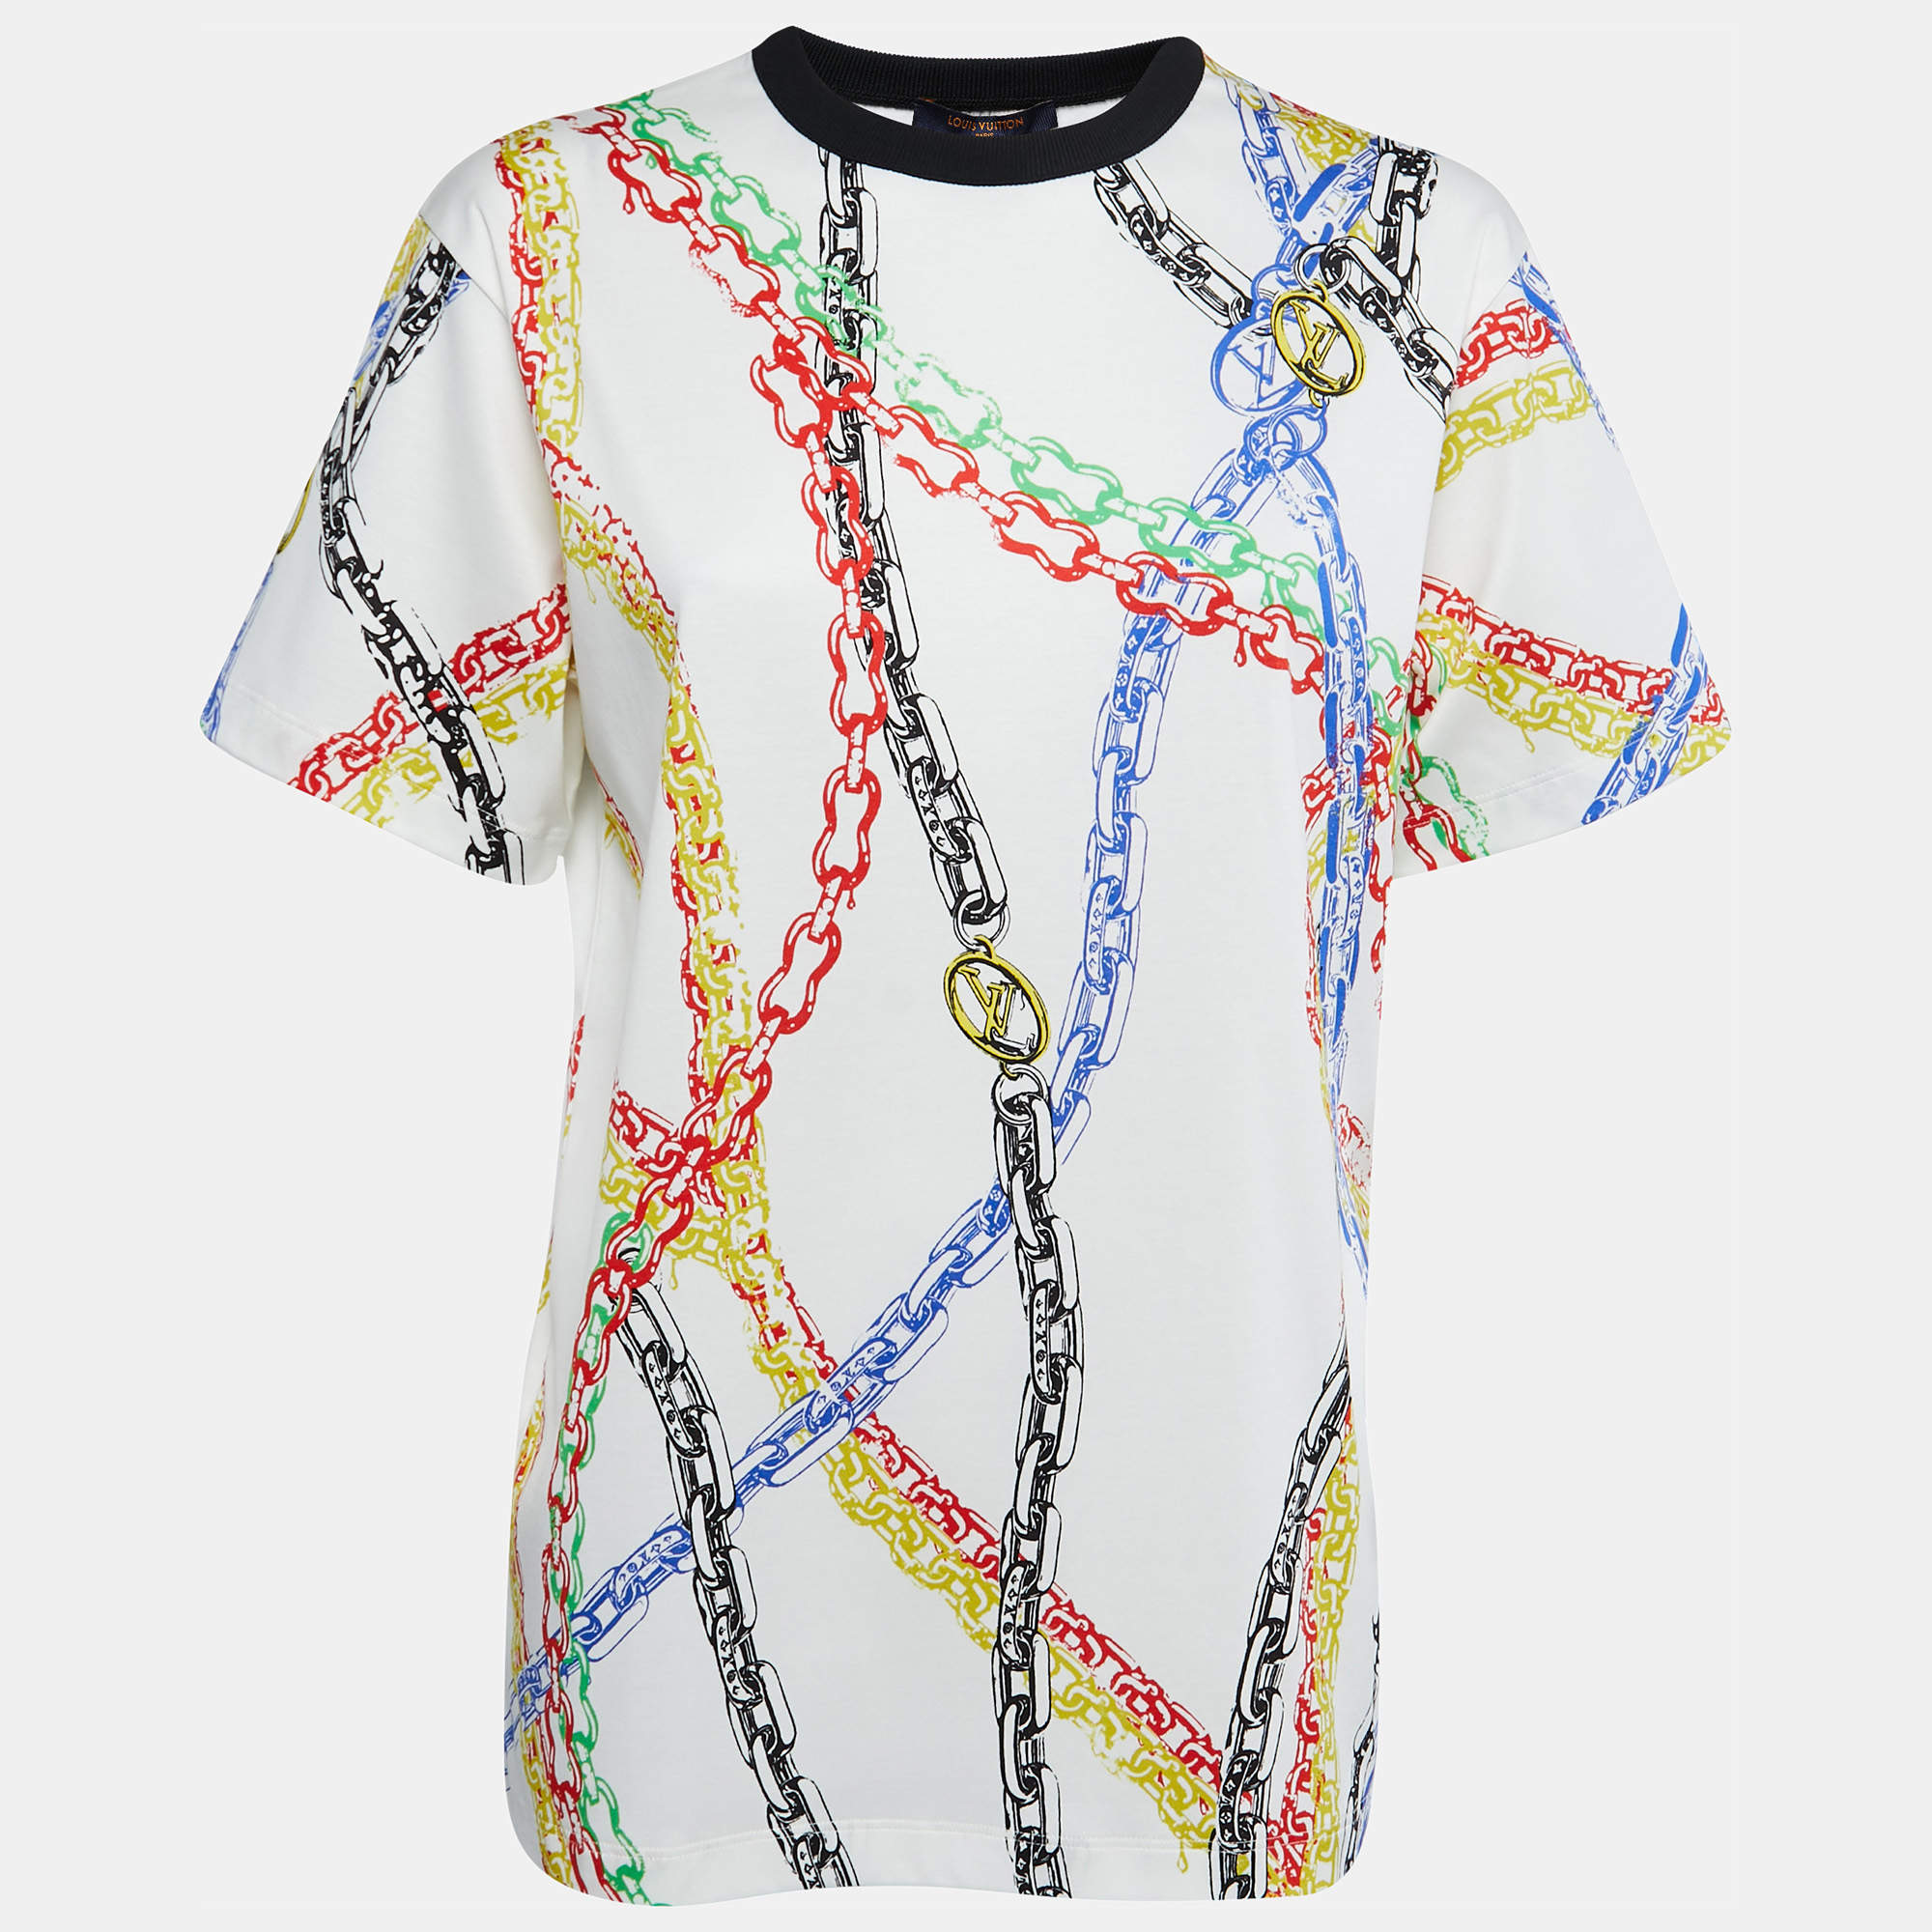 Louis Vuitton Rainbow Print T-shirt